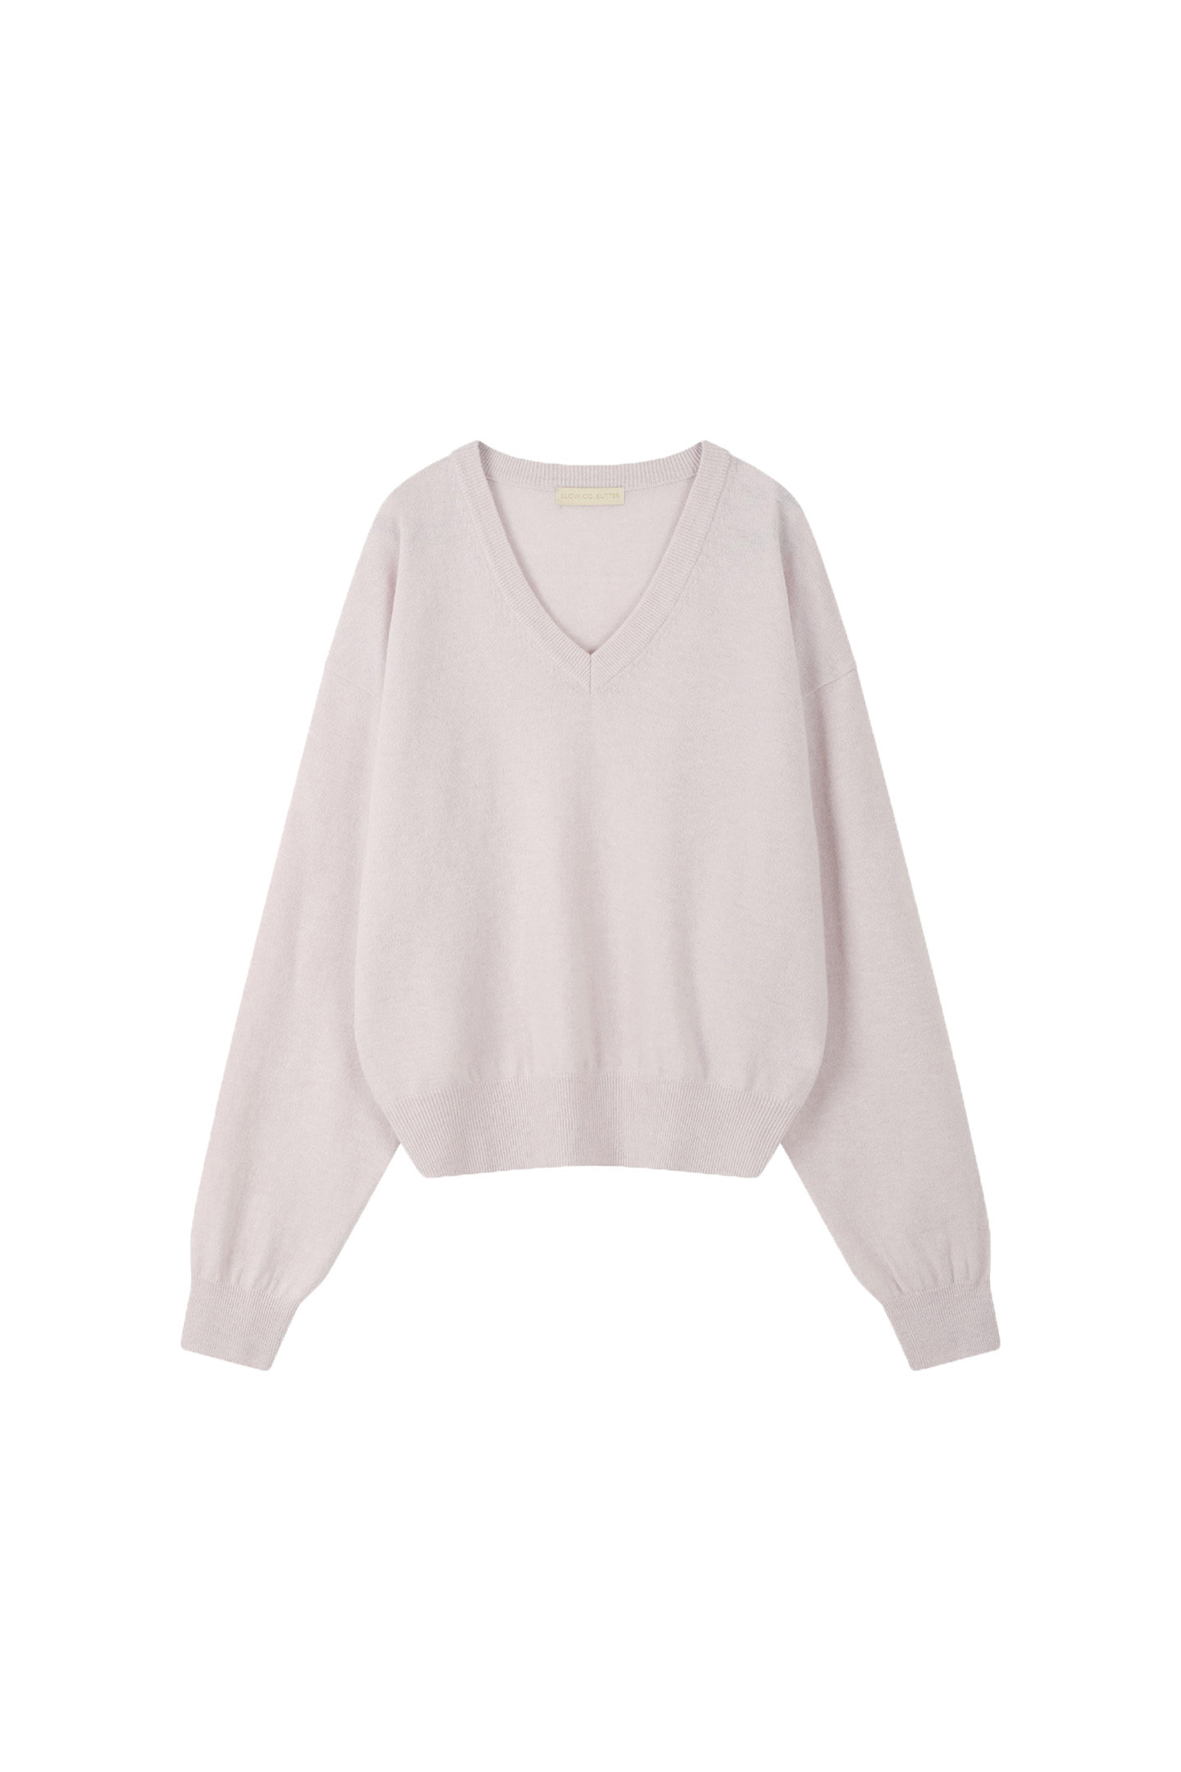 [SLOCO] Jenna v neck cashmere knit, pale pink